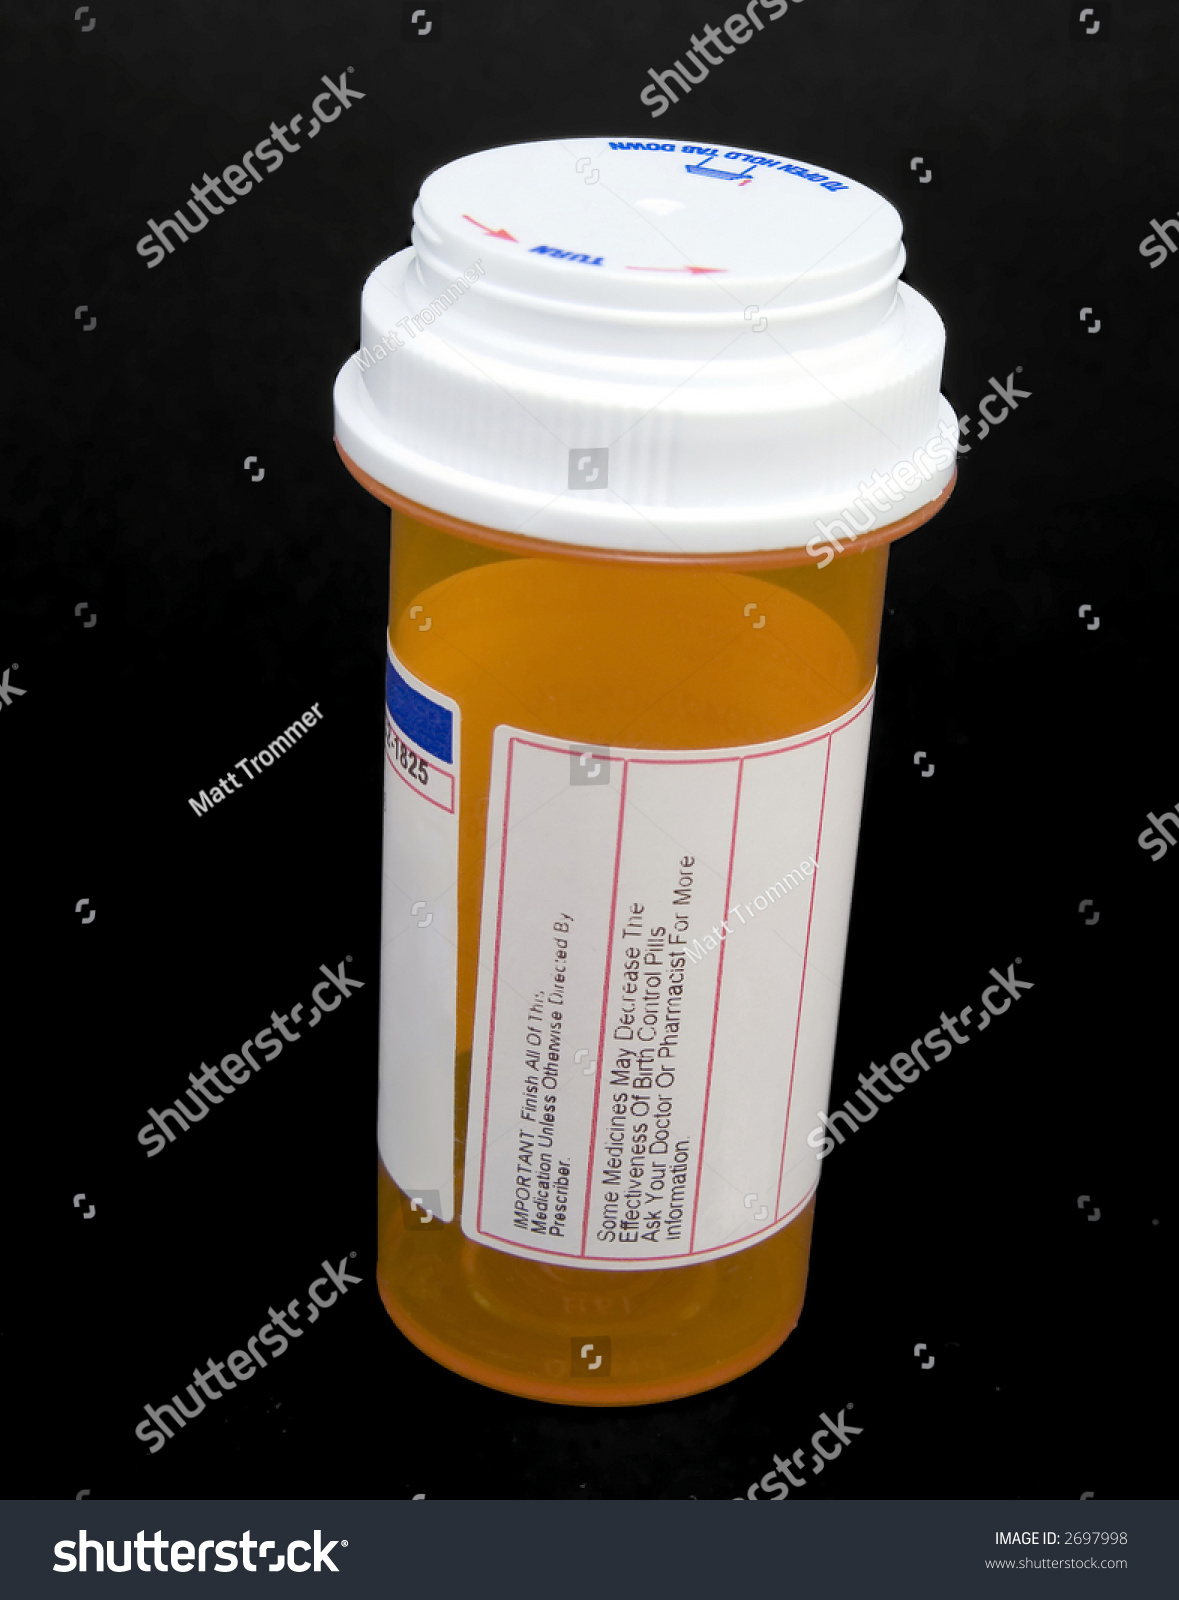 Stock Photo Empty Standard Prescription Drug Container 2697998 